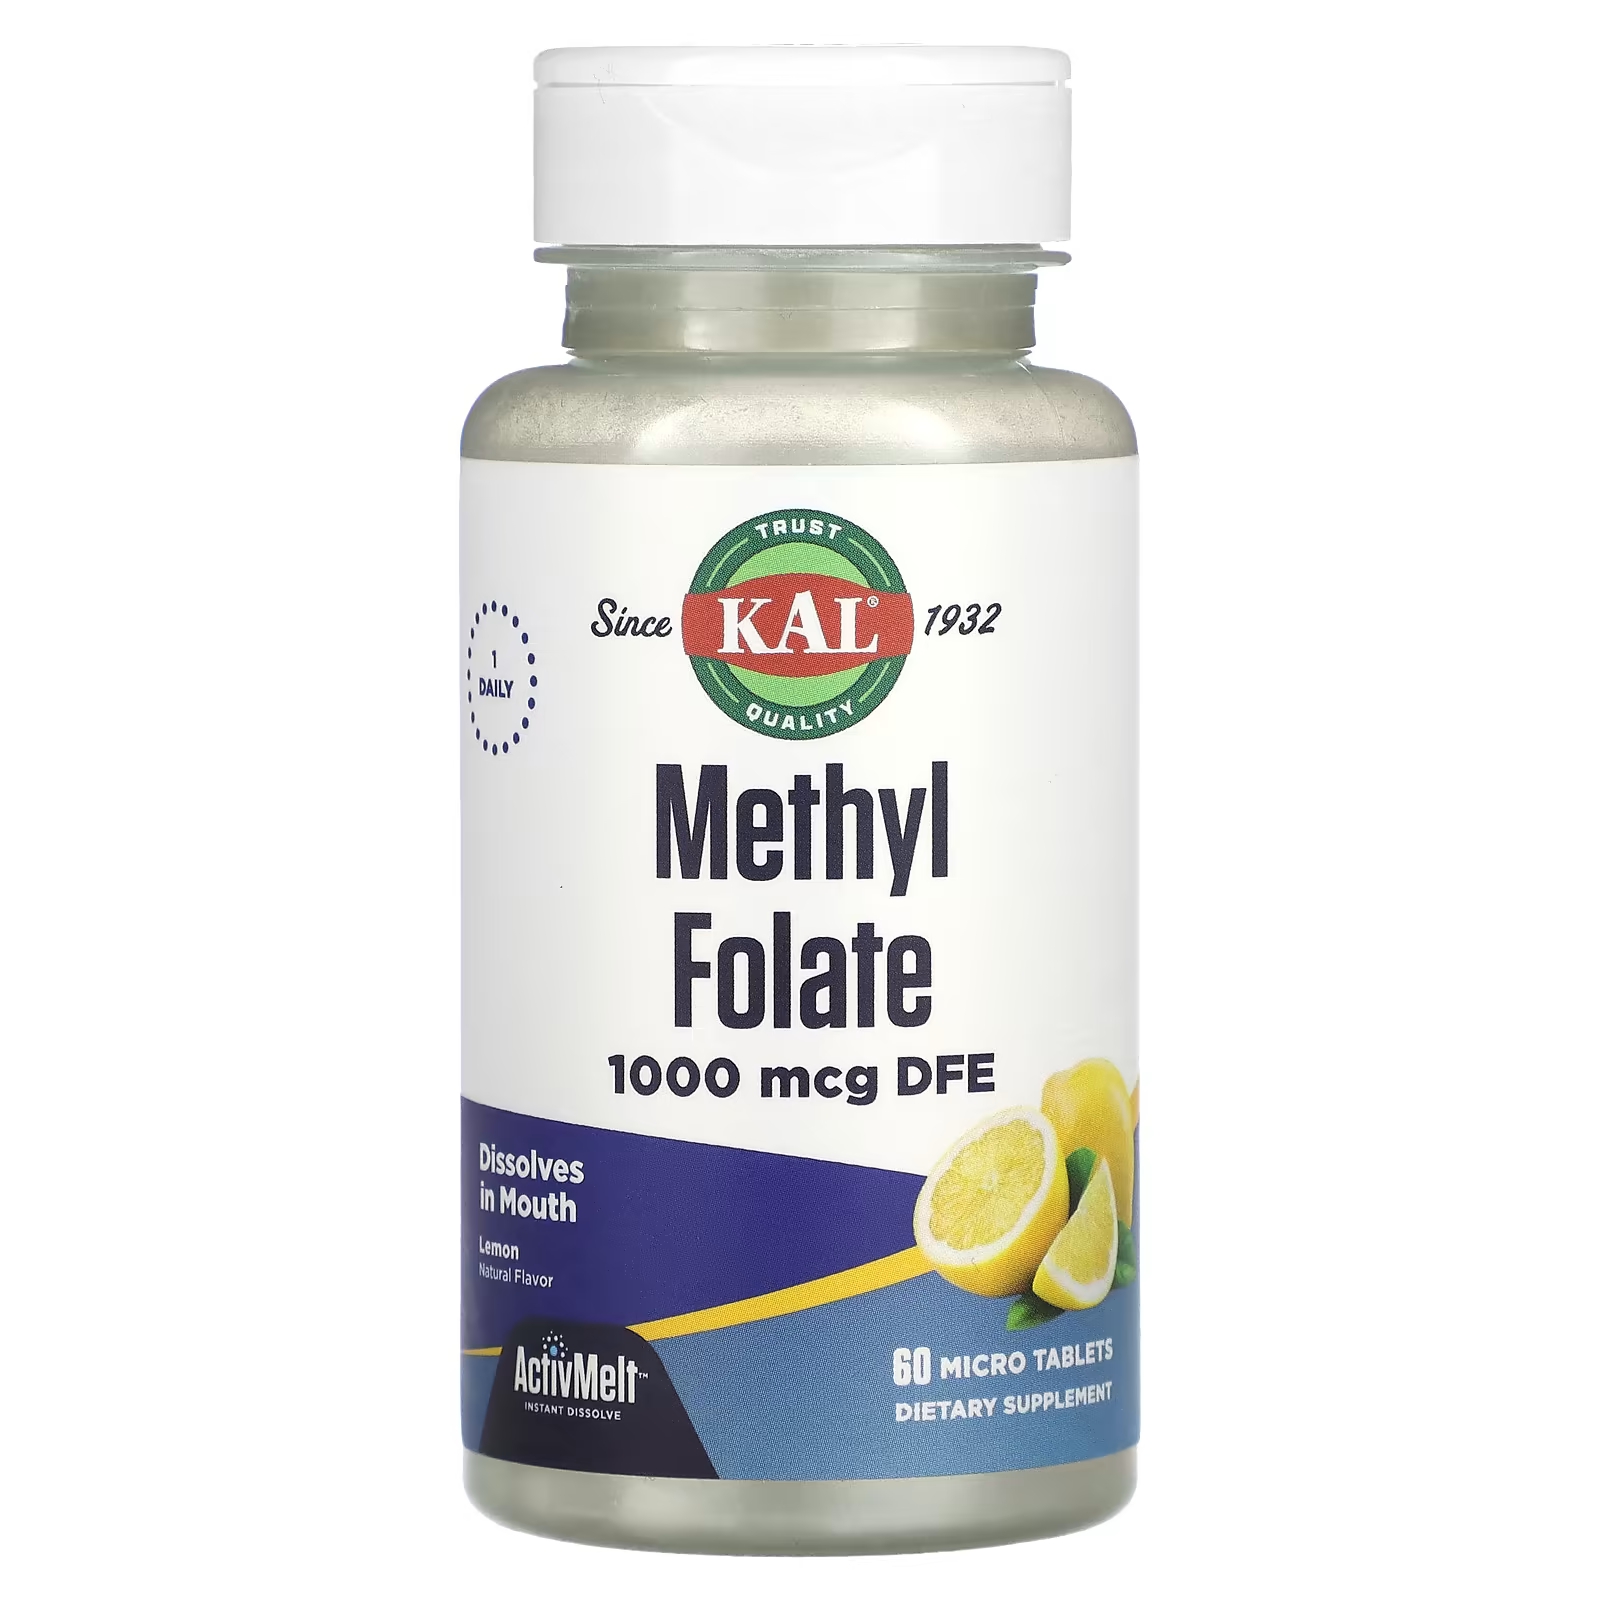 Биологически активная добавка KAL метилфолат, лимон, 1000 мкг., DFE, 60 микротаблеток kal ультрабиотин activmelt ягодная смесь 10 000 мкг 60 микротаблеток